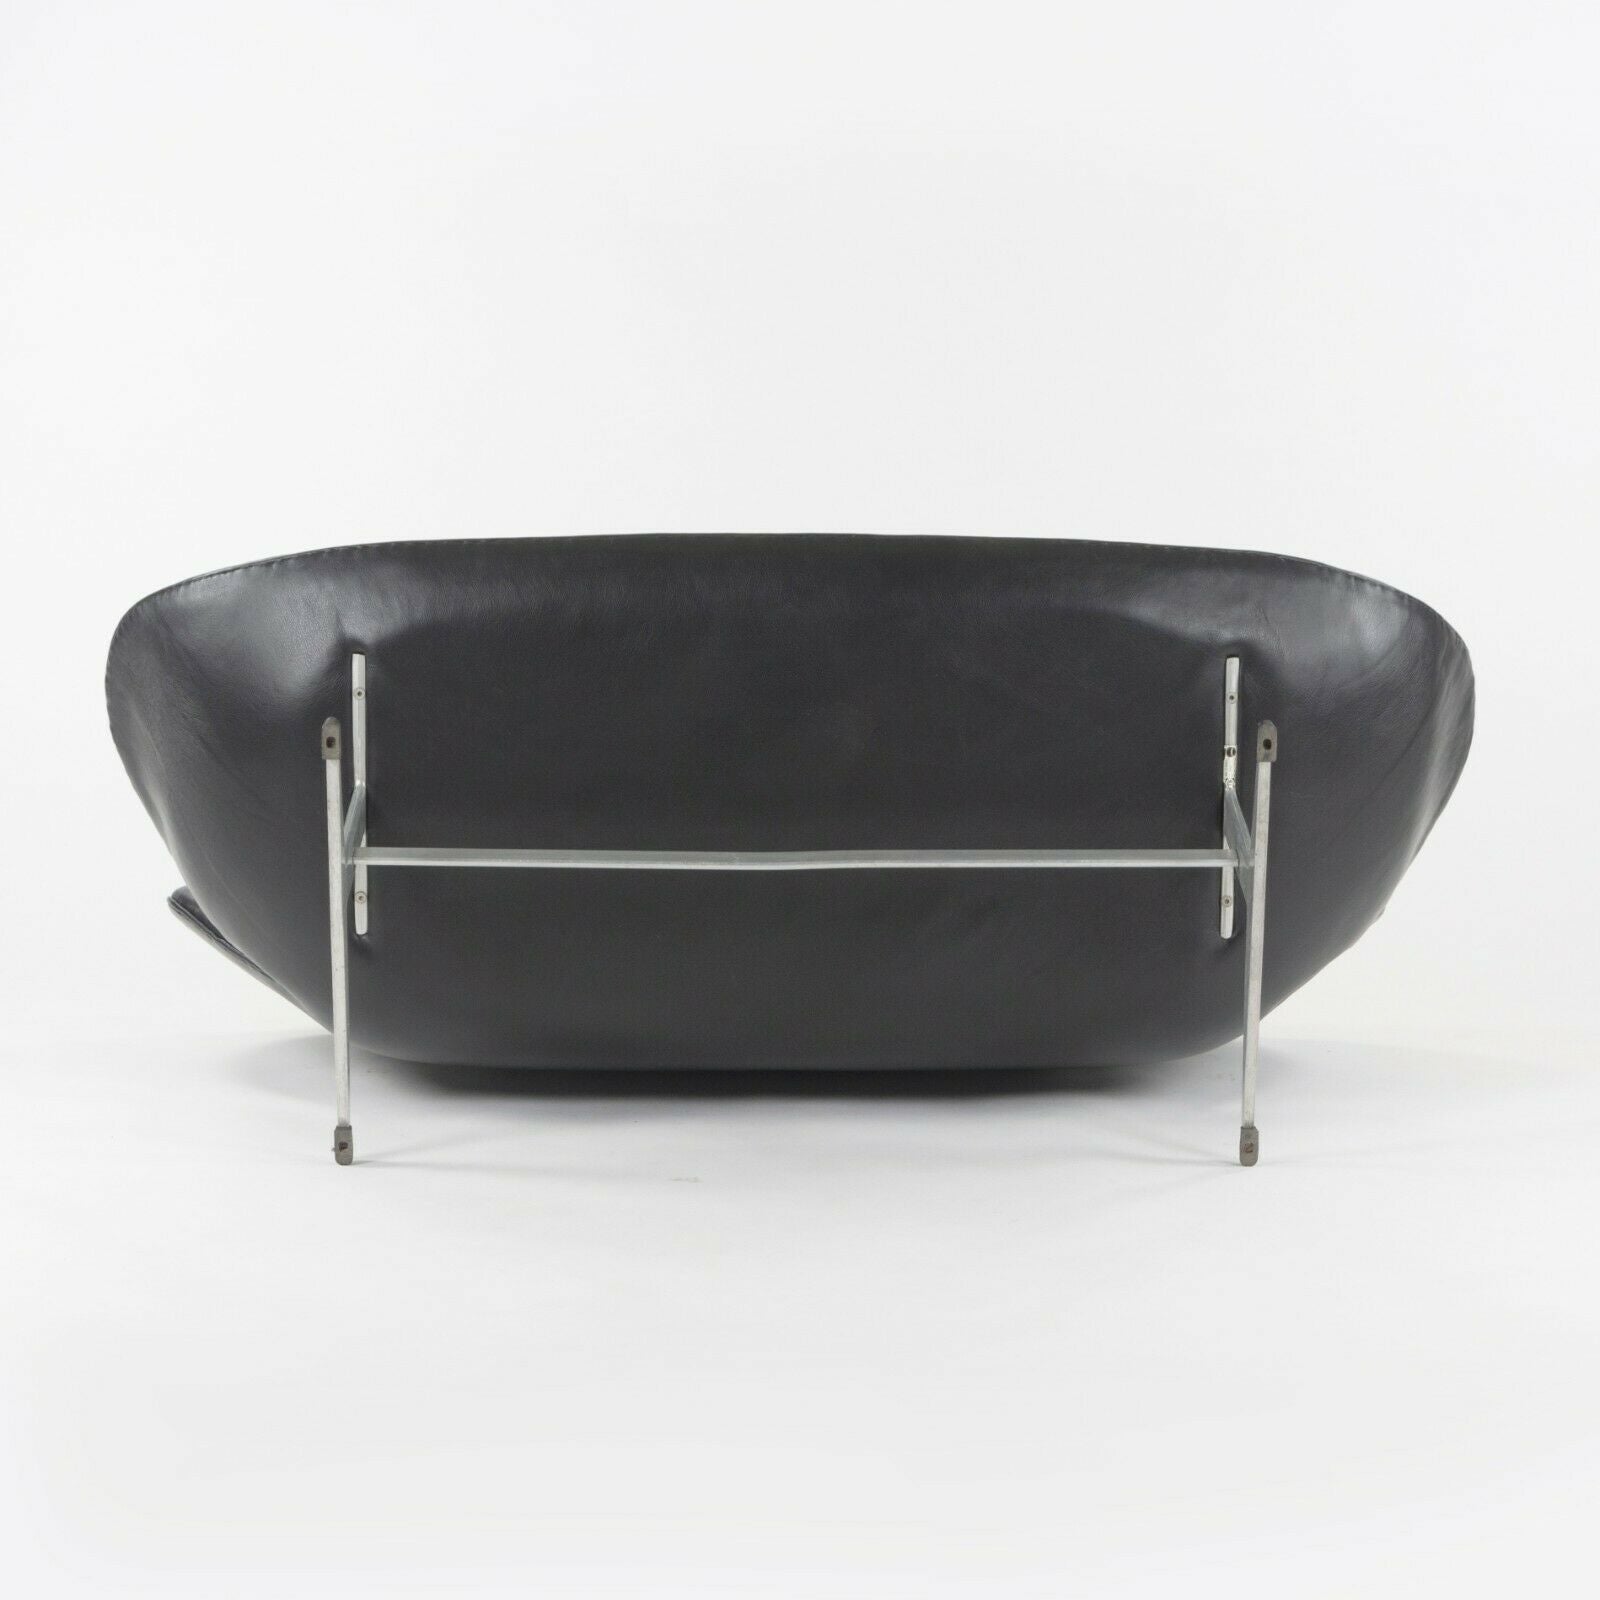 SOLD 1965 Vintage Leather Swan Settee by Arne Jacobsen for Fritz Hansen of Denmark